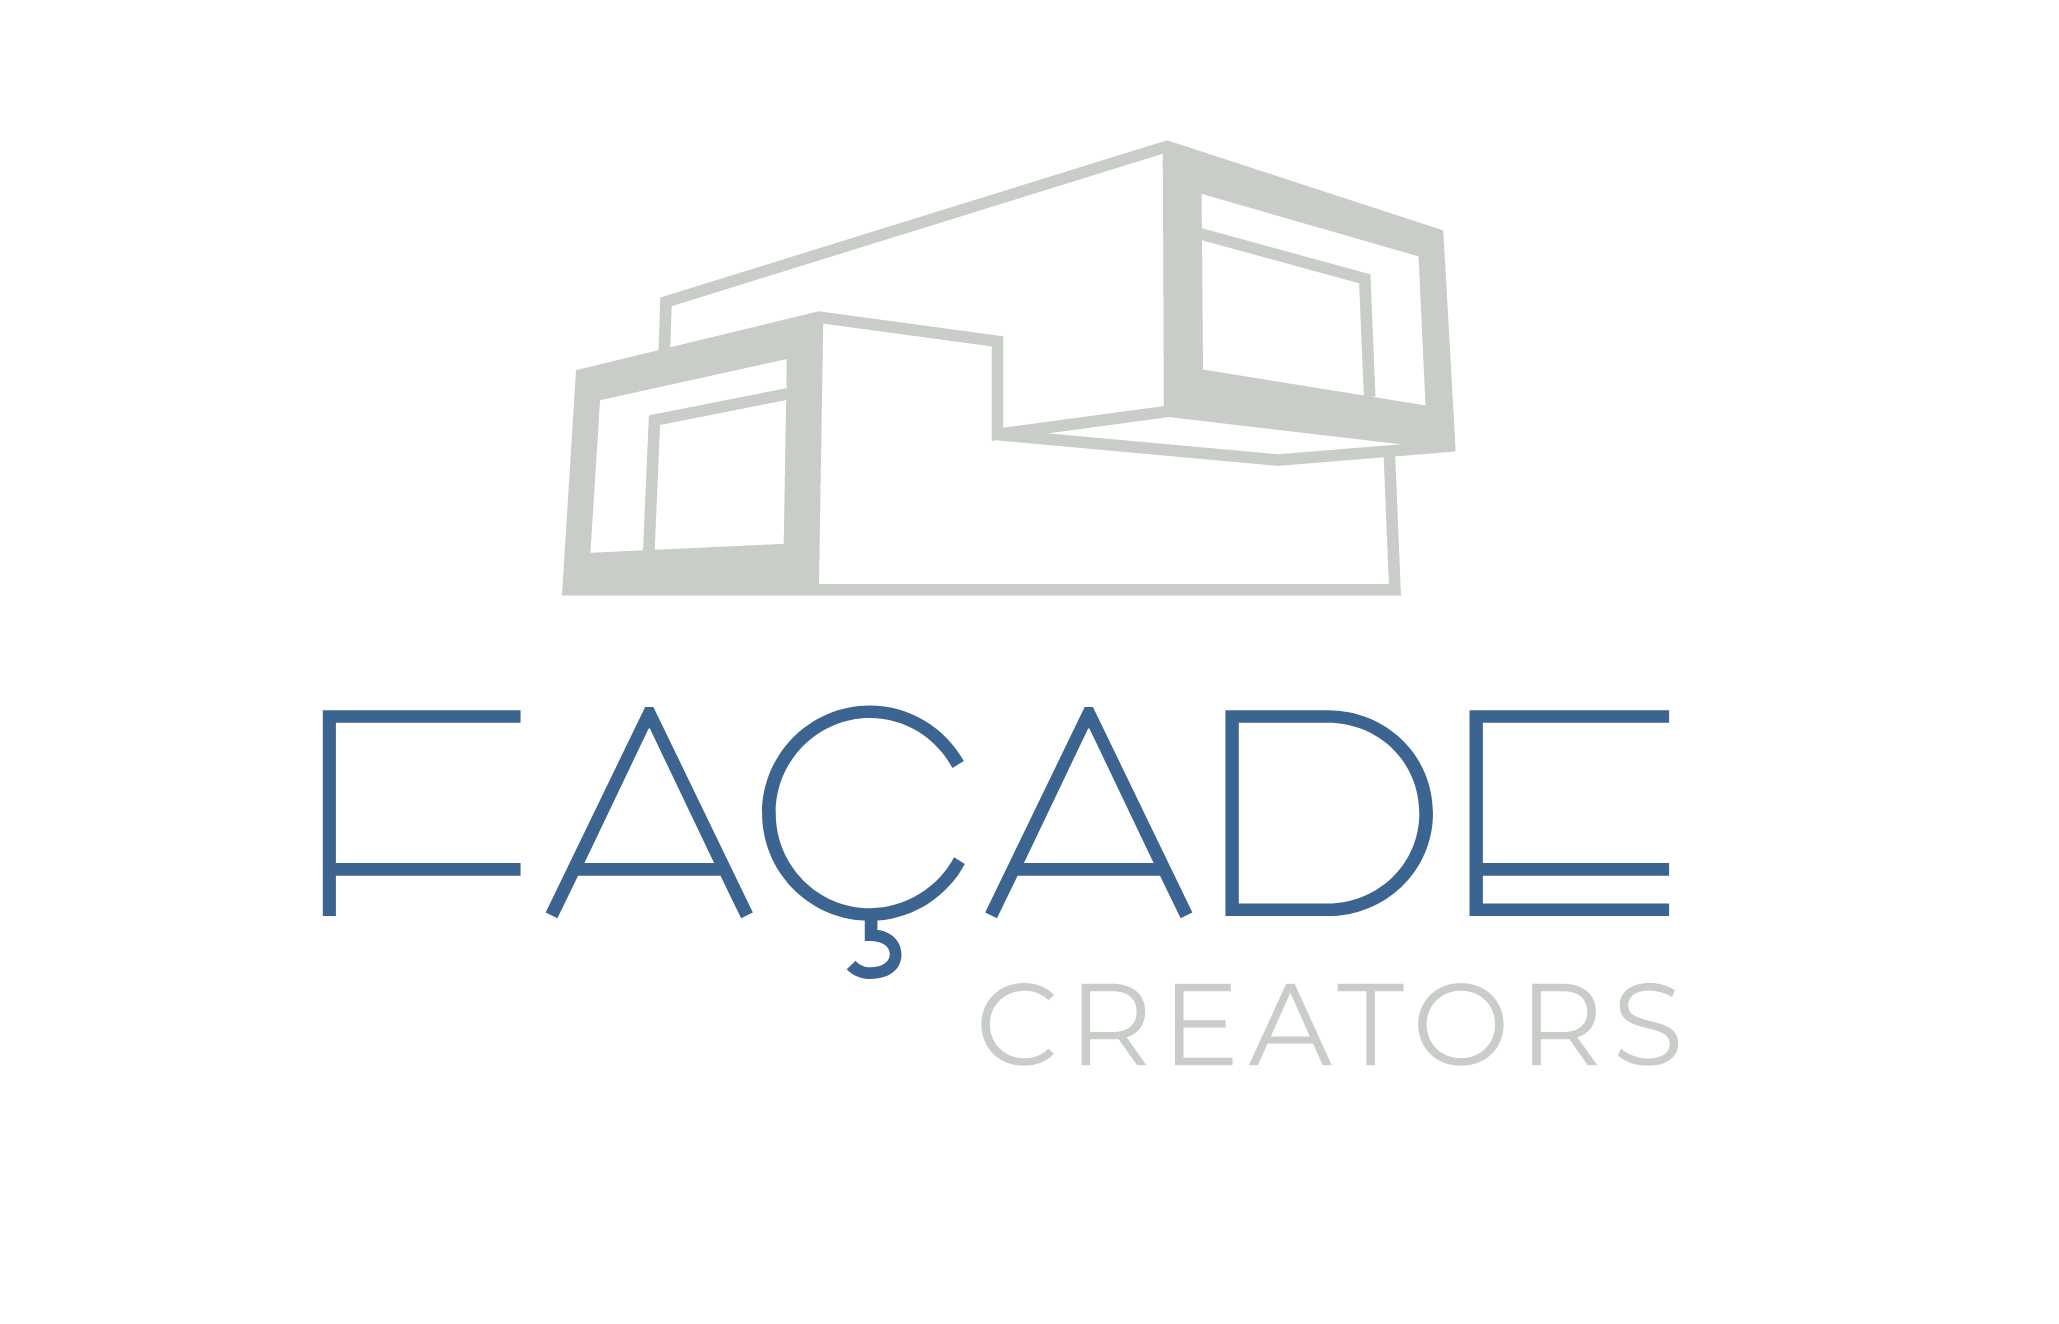 Facade Creators